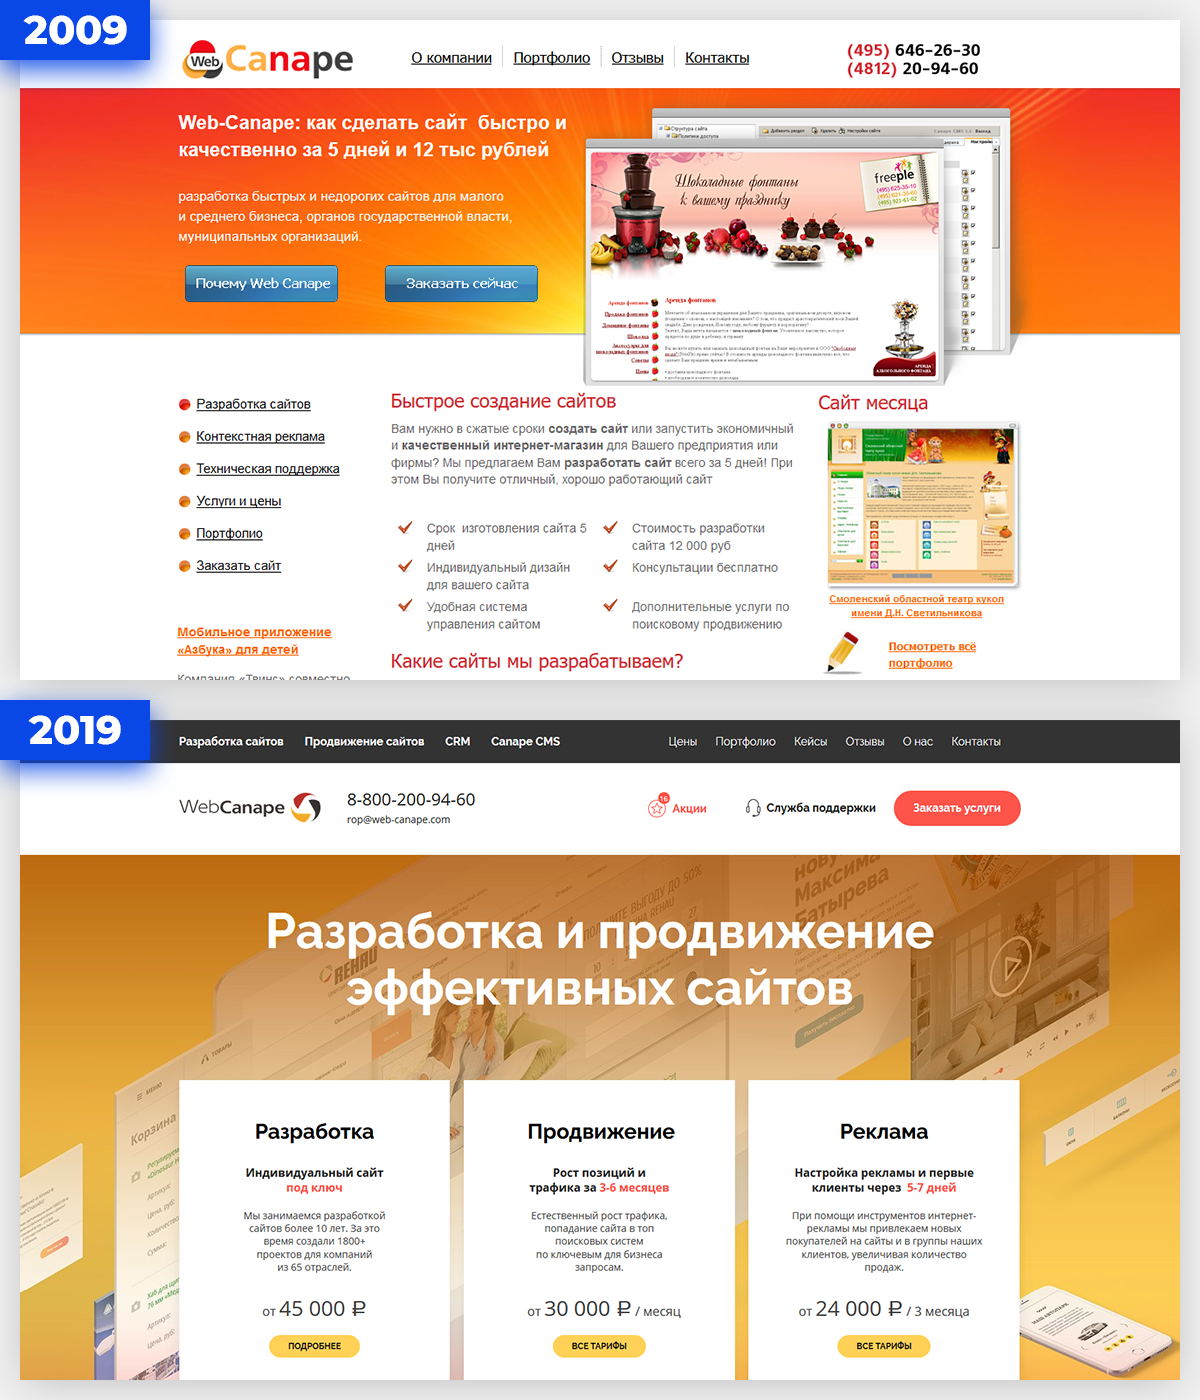 Главная страница сайта в 2009 и в 2019 году